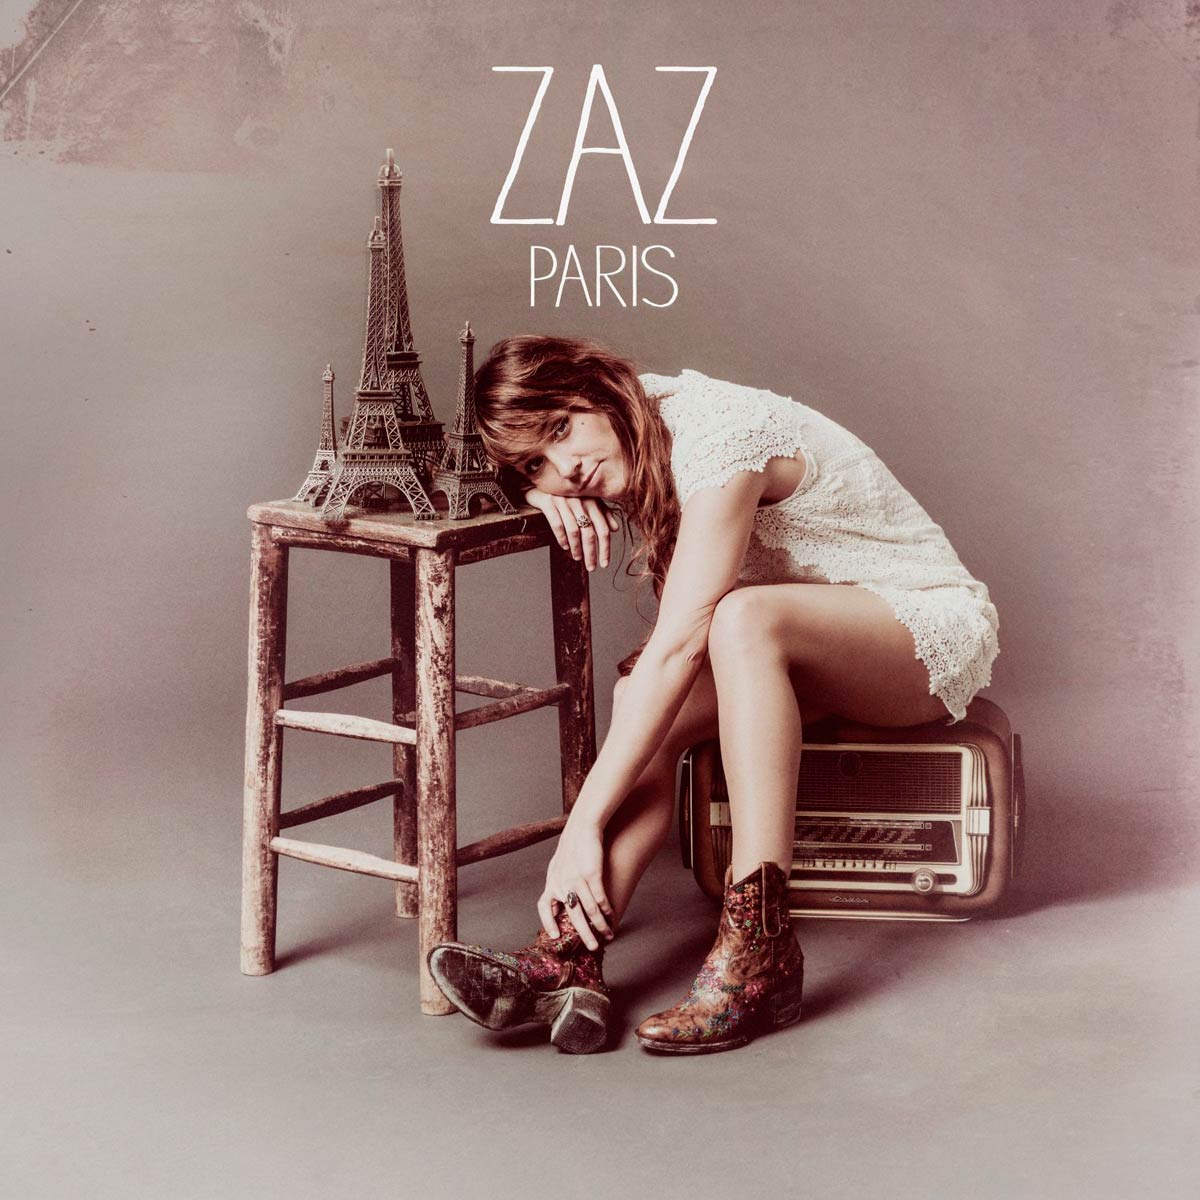 Zaz: Paris, la portada del disco